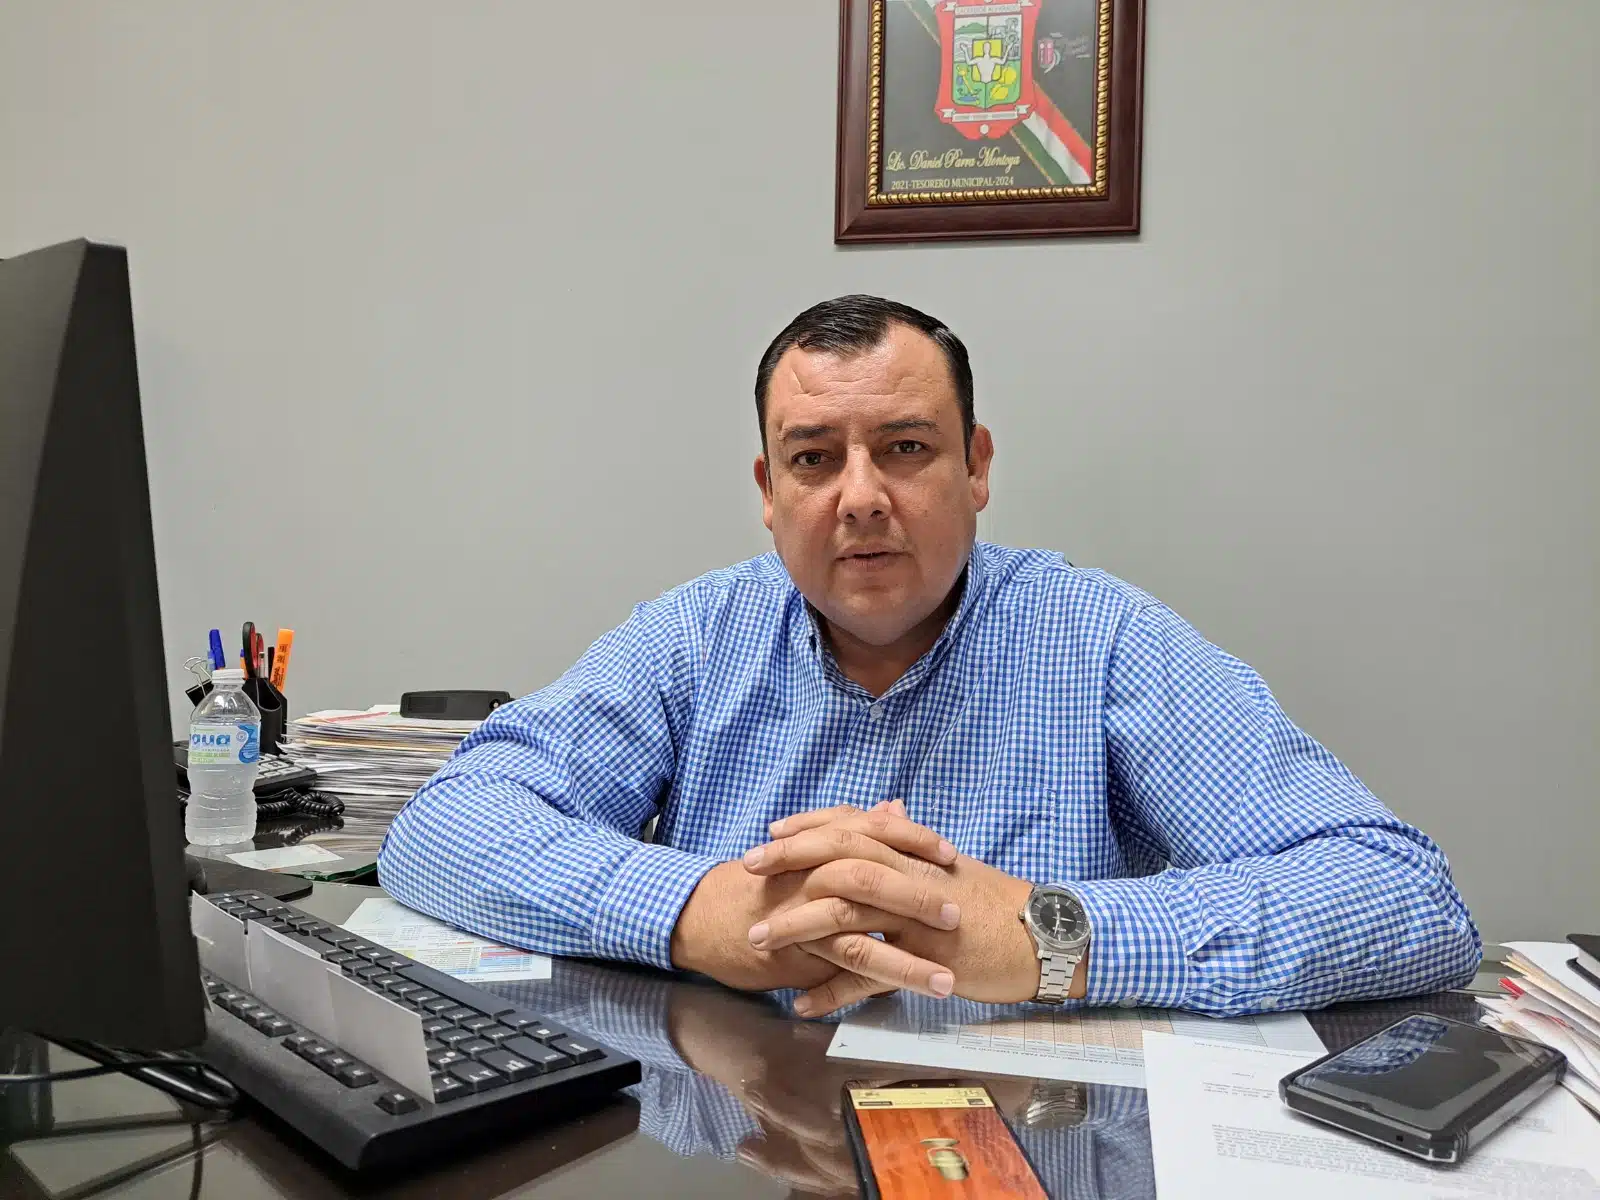 El tesorero municipal Daniel Parra Montoya se mostró contento por haber logrado la meta del programa